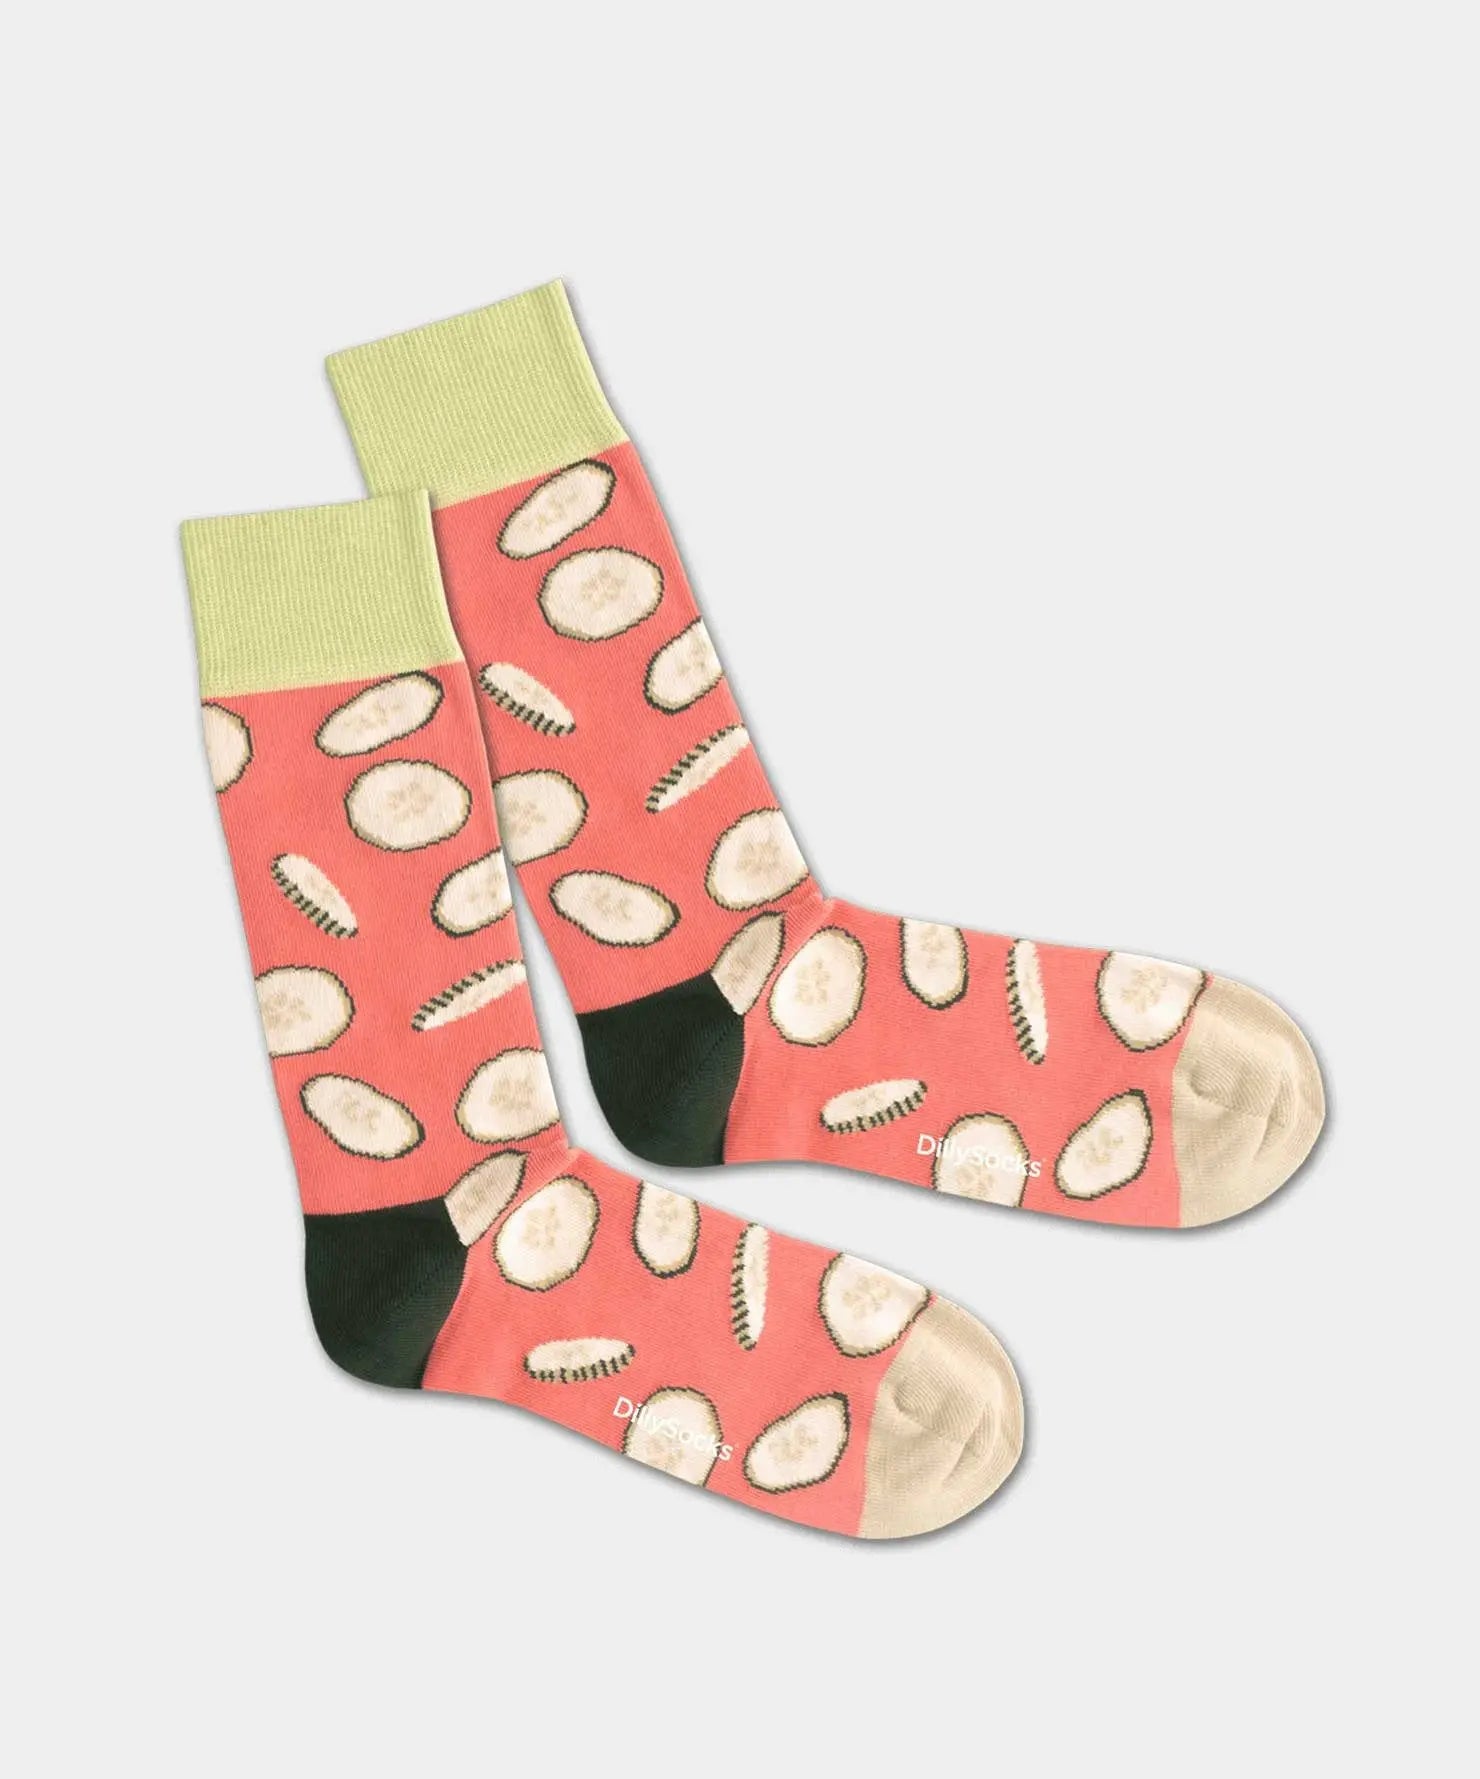 - Socken in Rot mit Essen Motiv/Muster von DillySocks